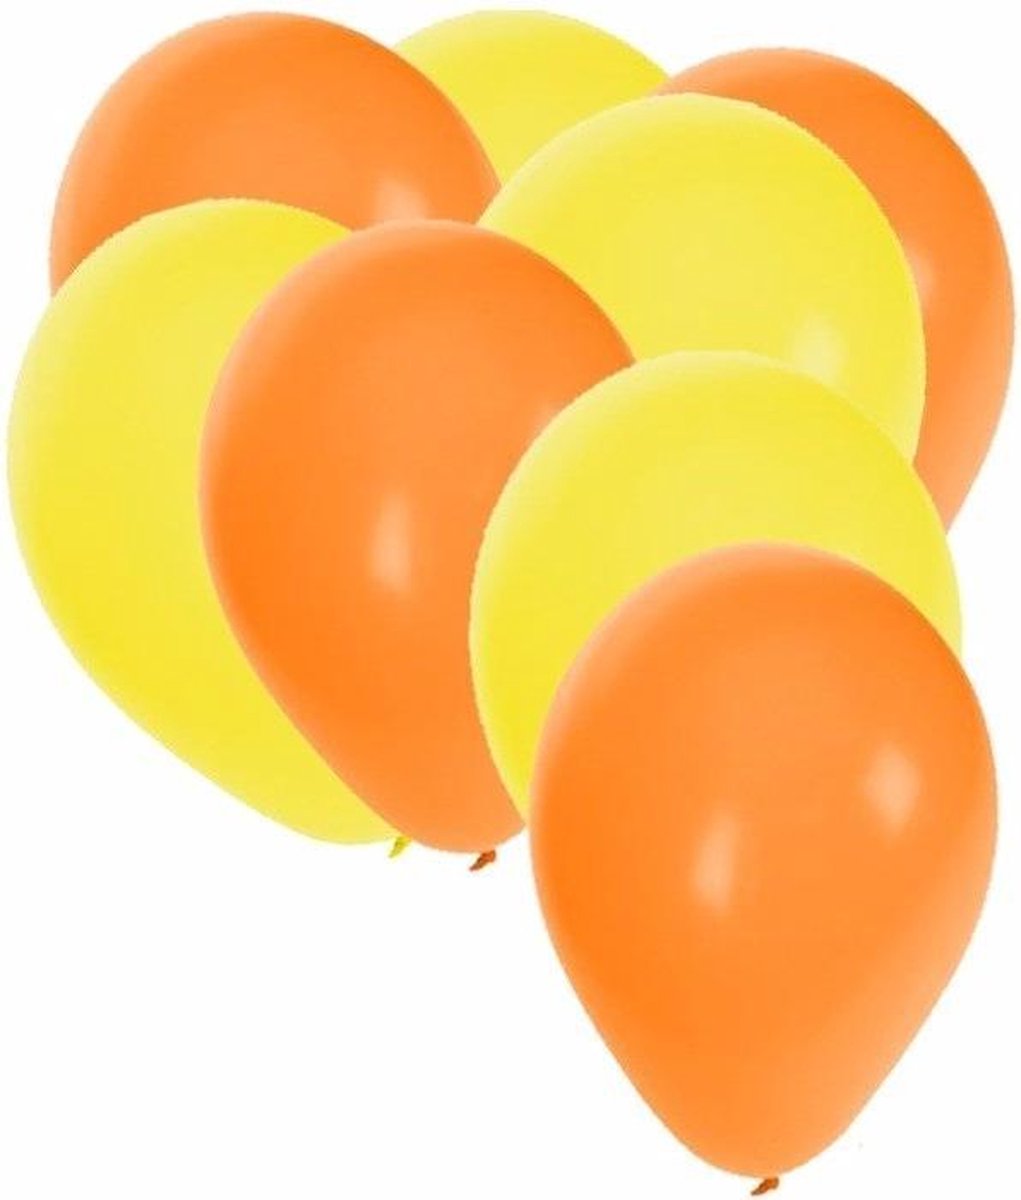 30x ballonnen - 27 cm - oranje / gele versiering